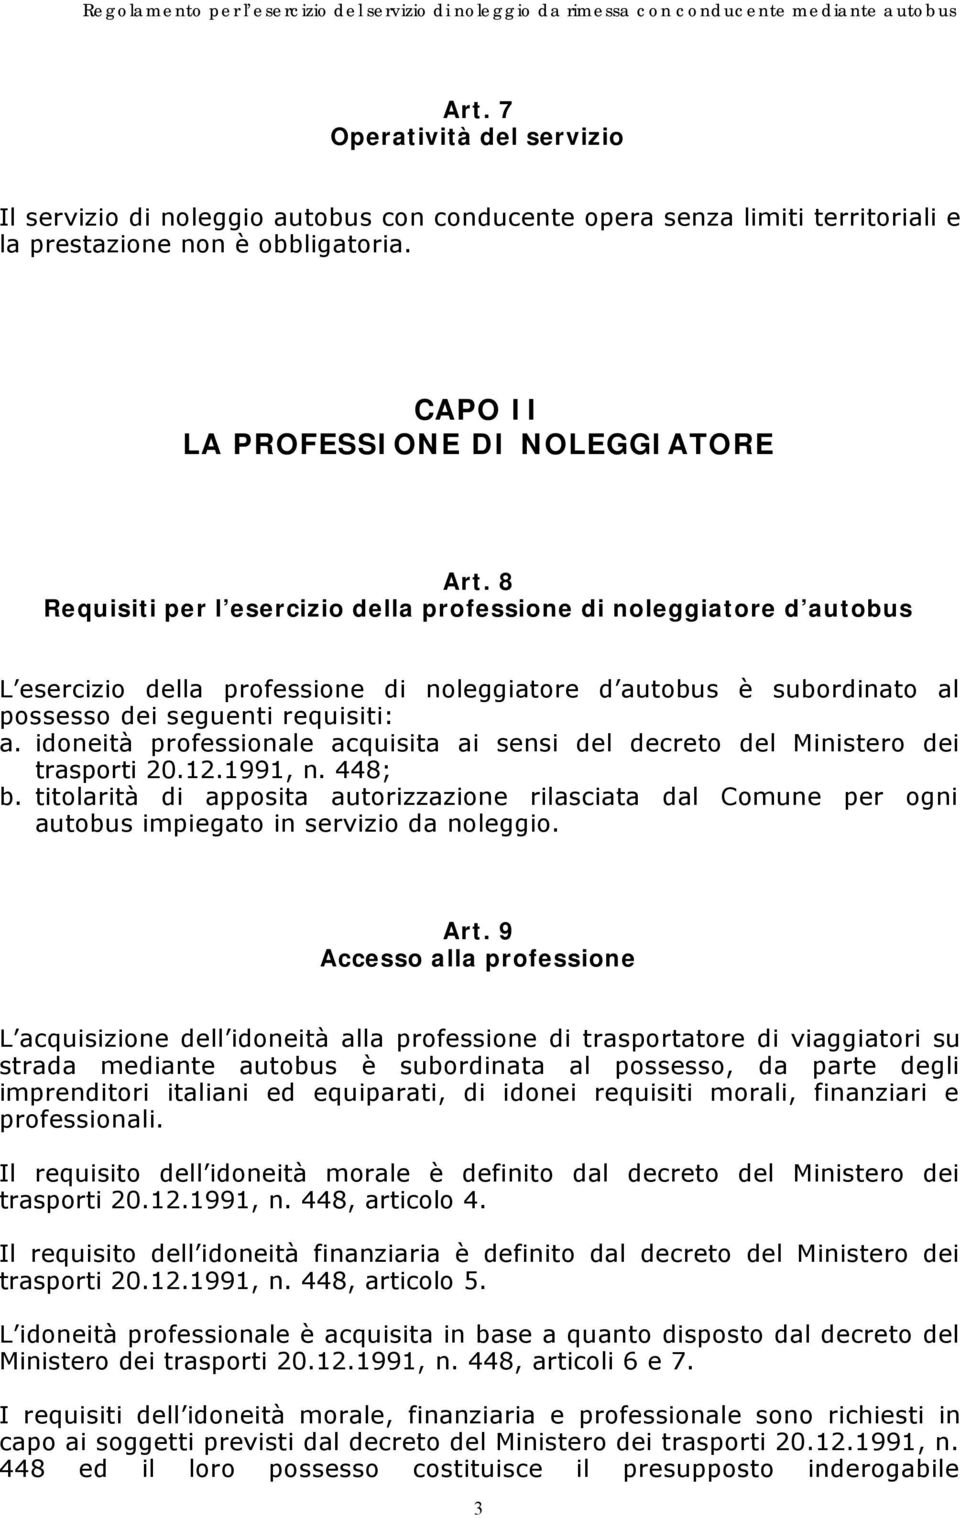 idoneità professionale acquisita ai sensi del decreto del Ministero dei trasporti 20.12.1991, n. 448; b.